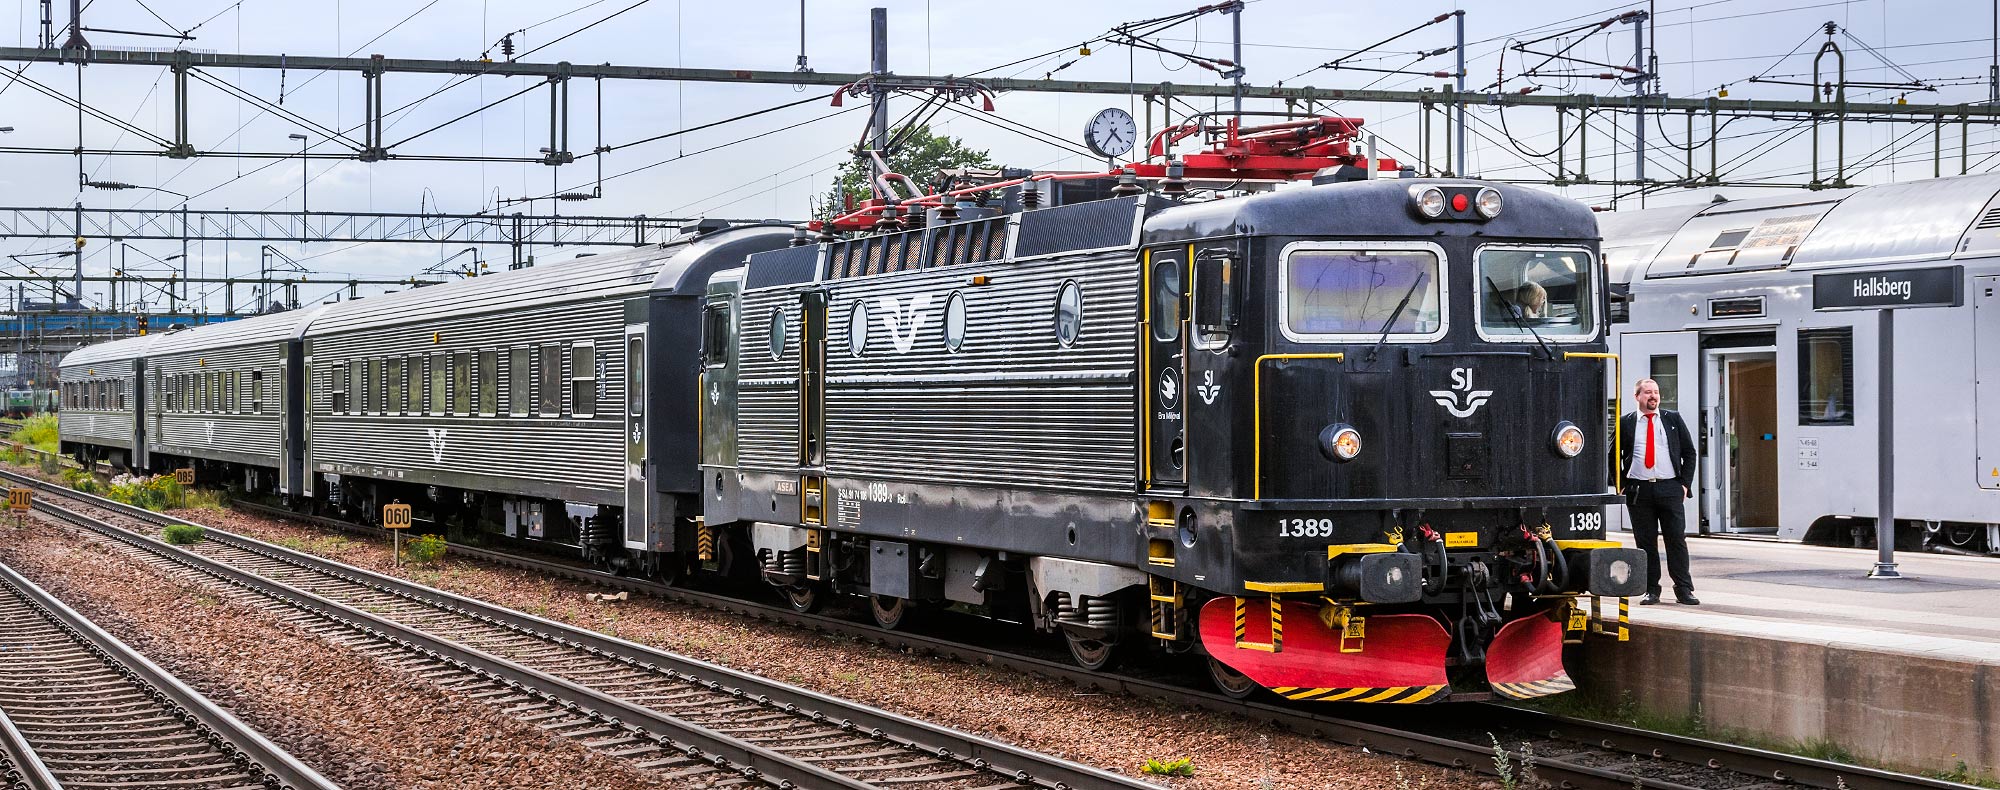 SJ Rc6 1389 med persontåg i Hallsberg 2017